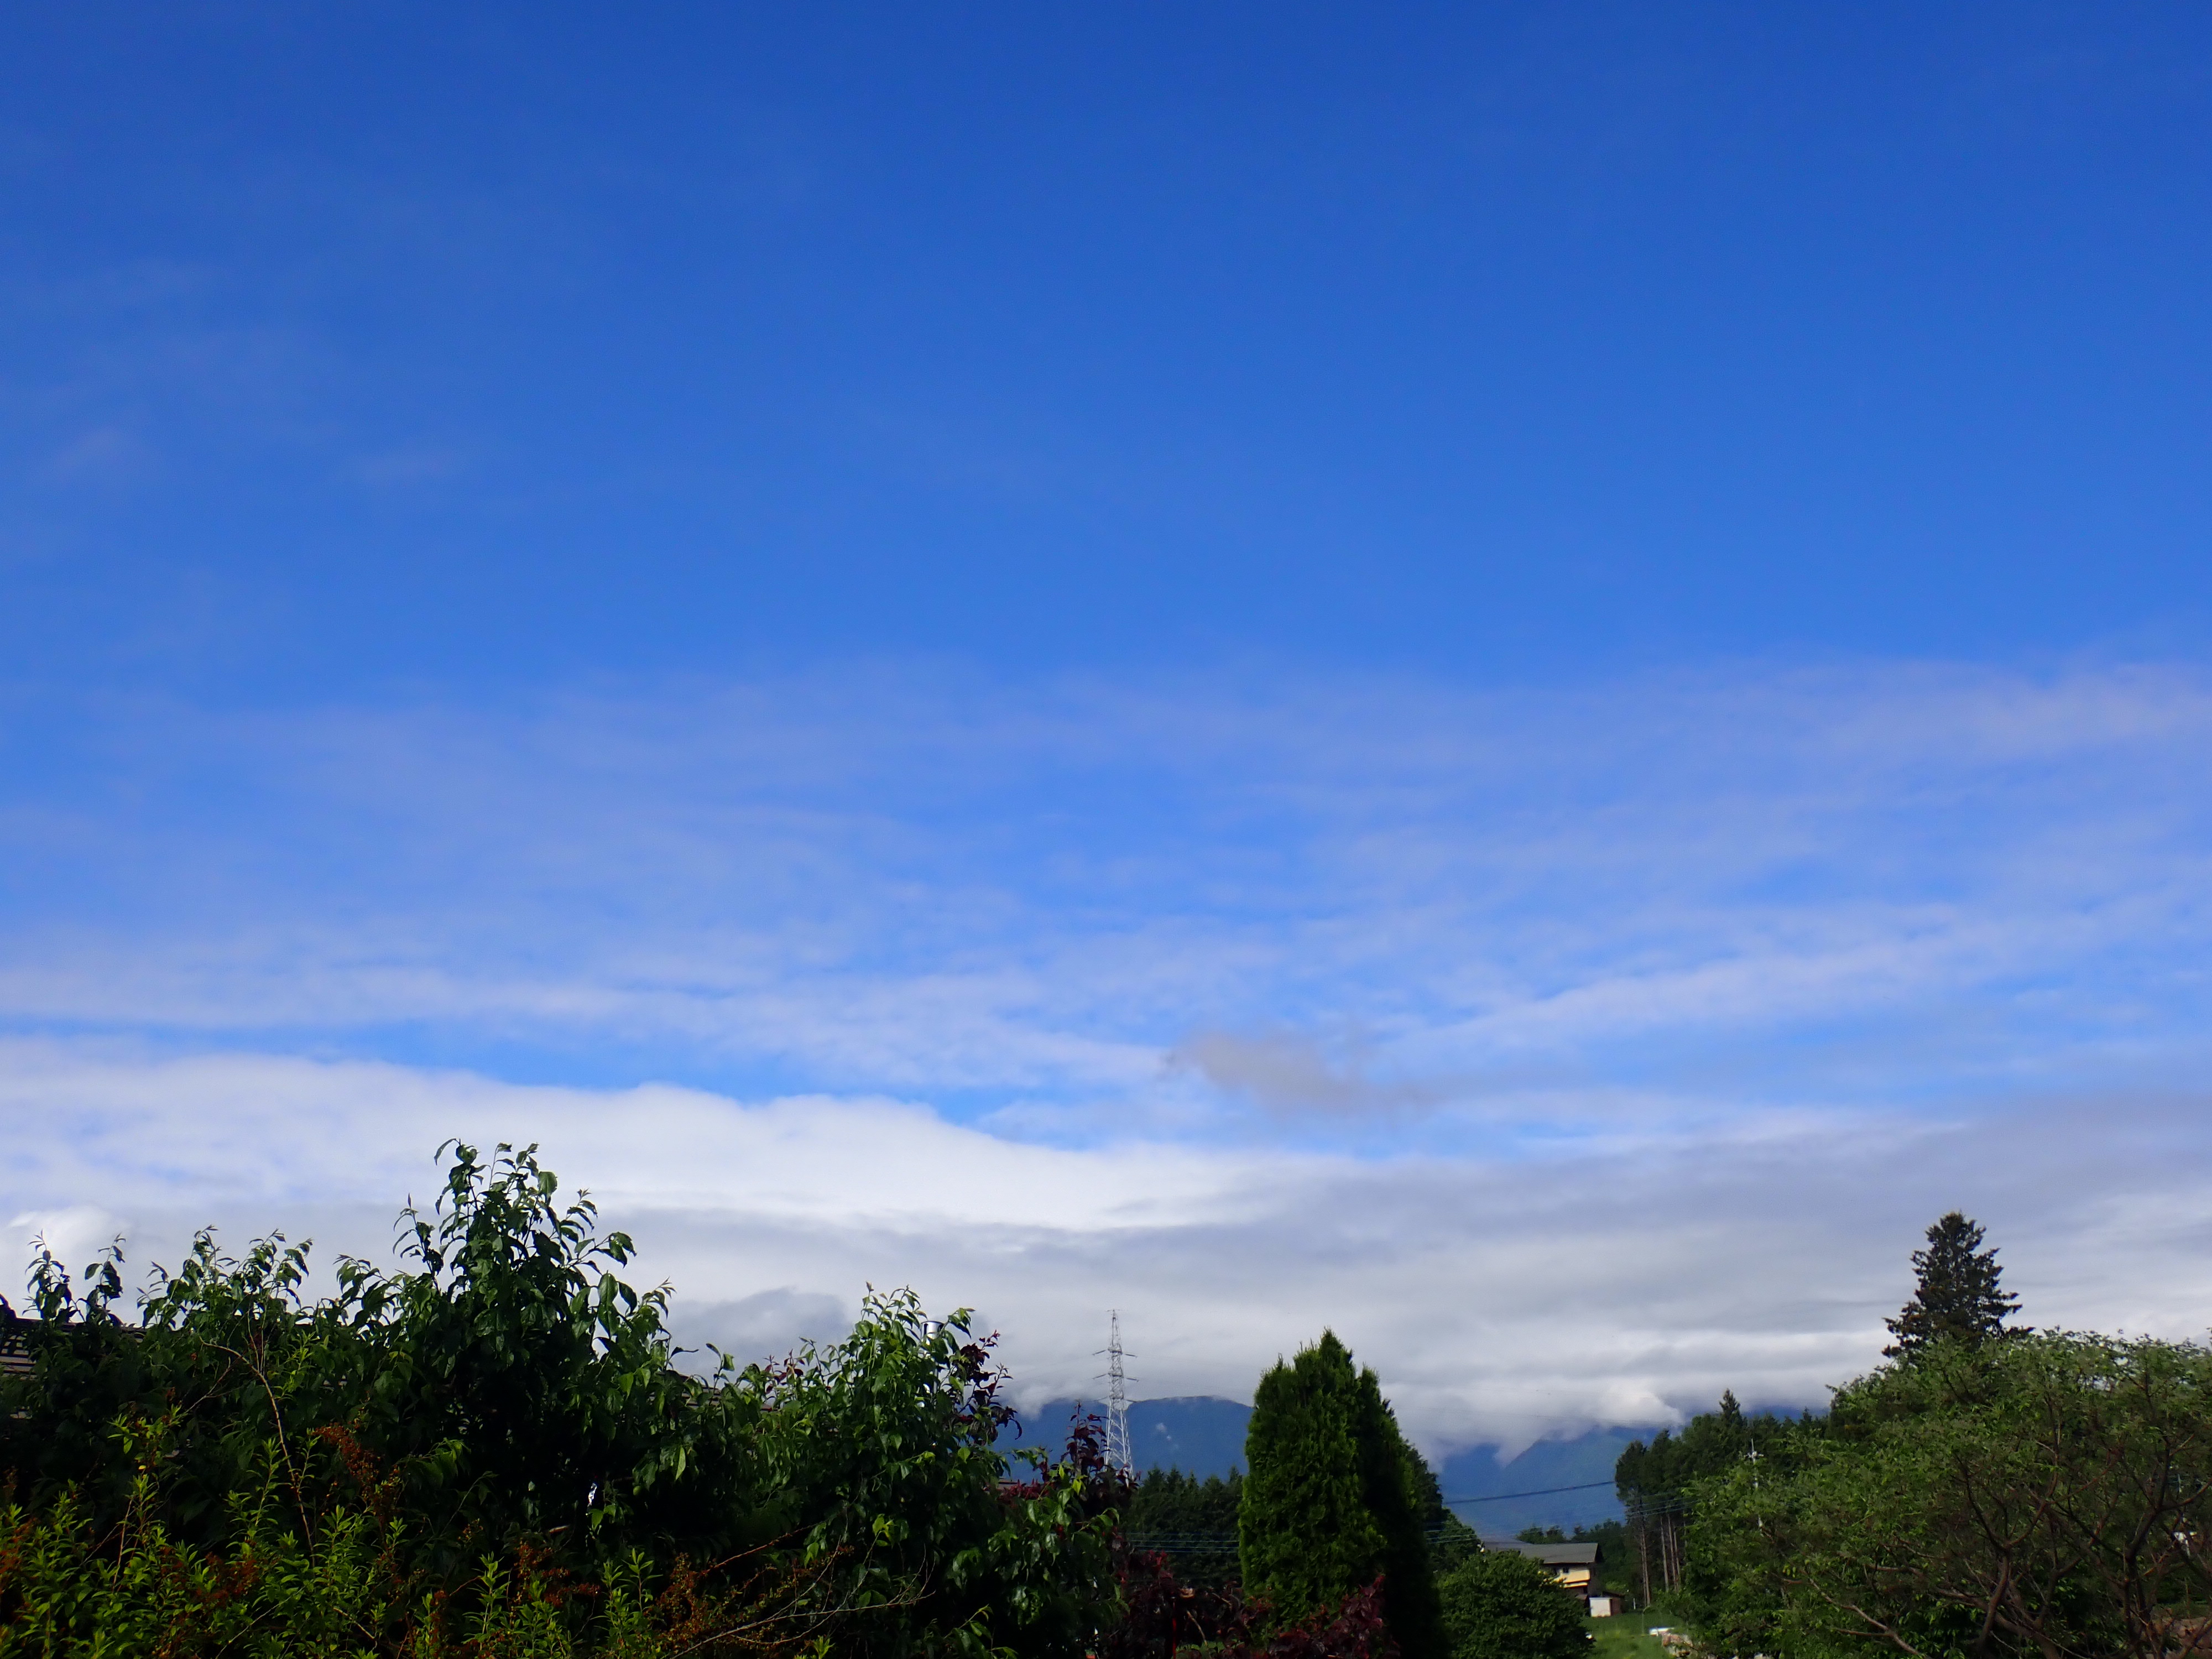 昨日の雨の影響か、朝方南アルプスに雲がかかっていた